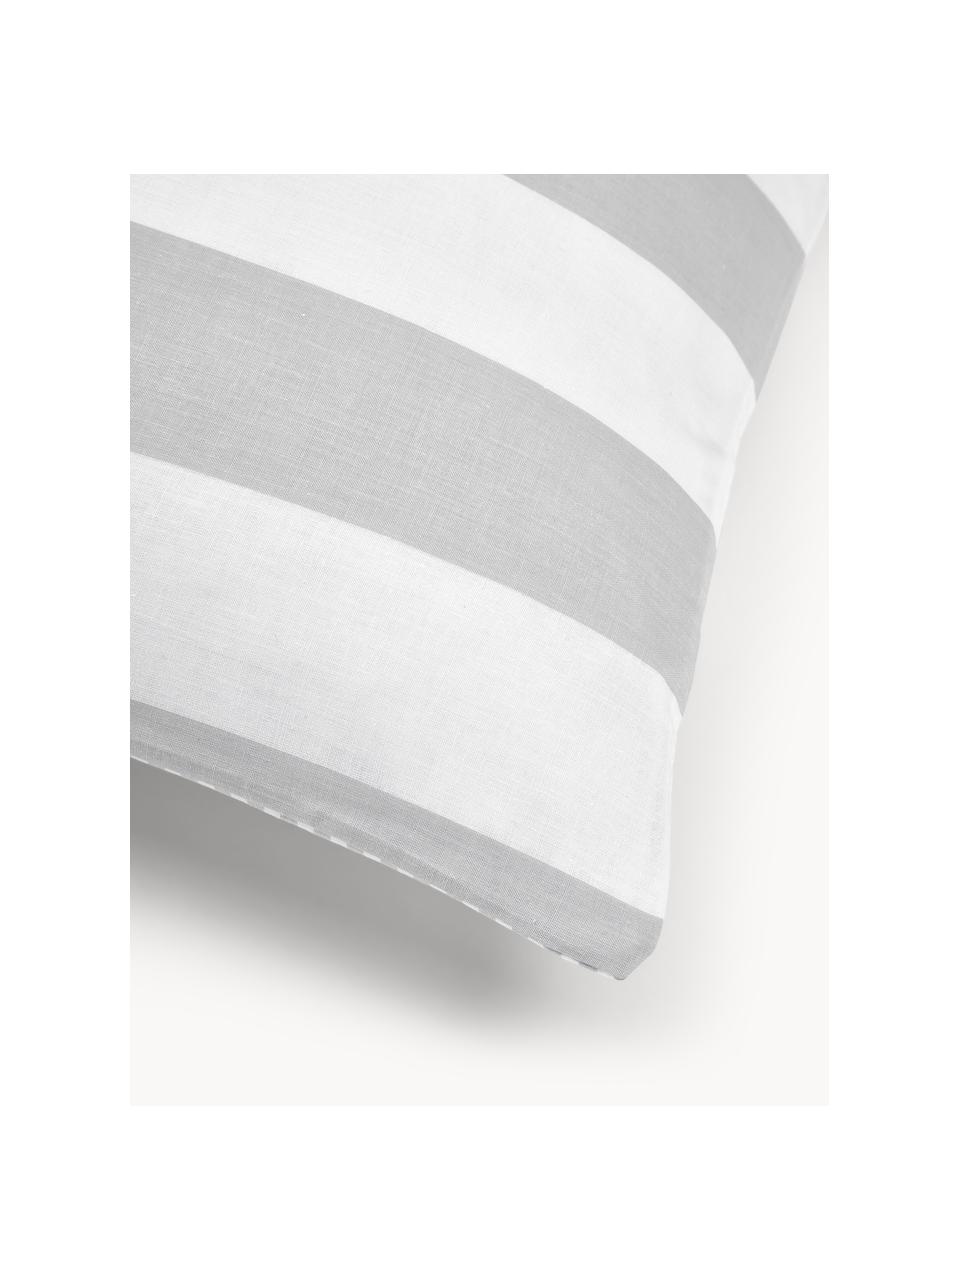 Dwustronna poszewka na poduszkę z bawełny Lorena, Jasny szary, biały, S 40 x D 80 cm